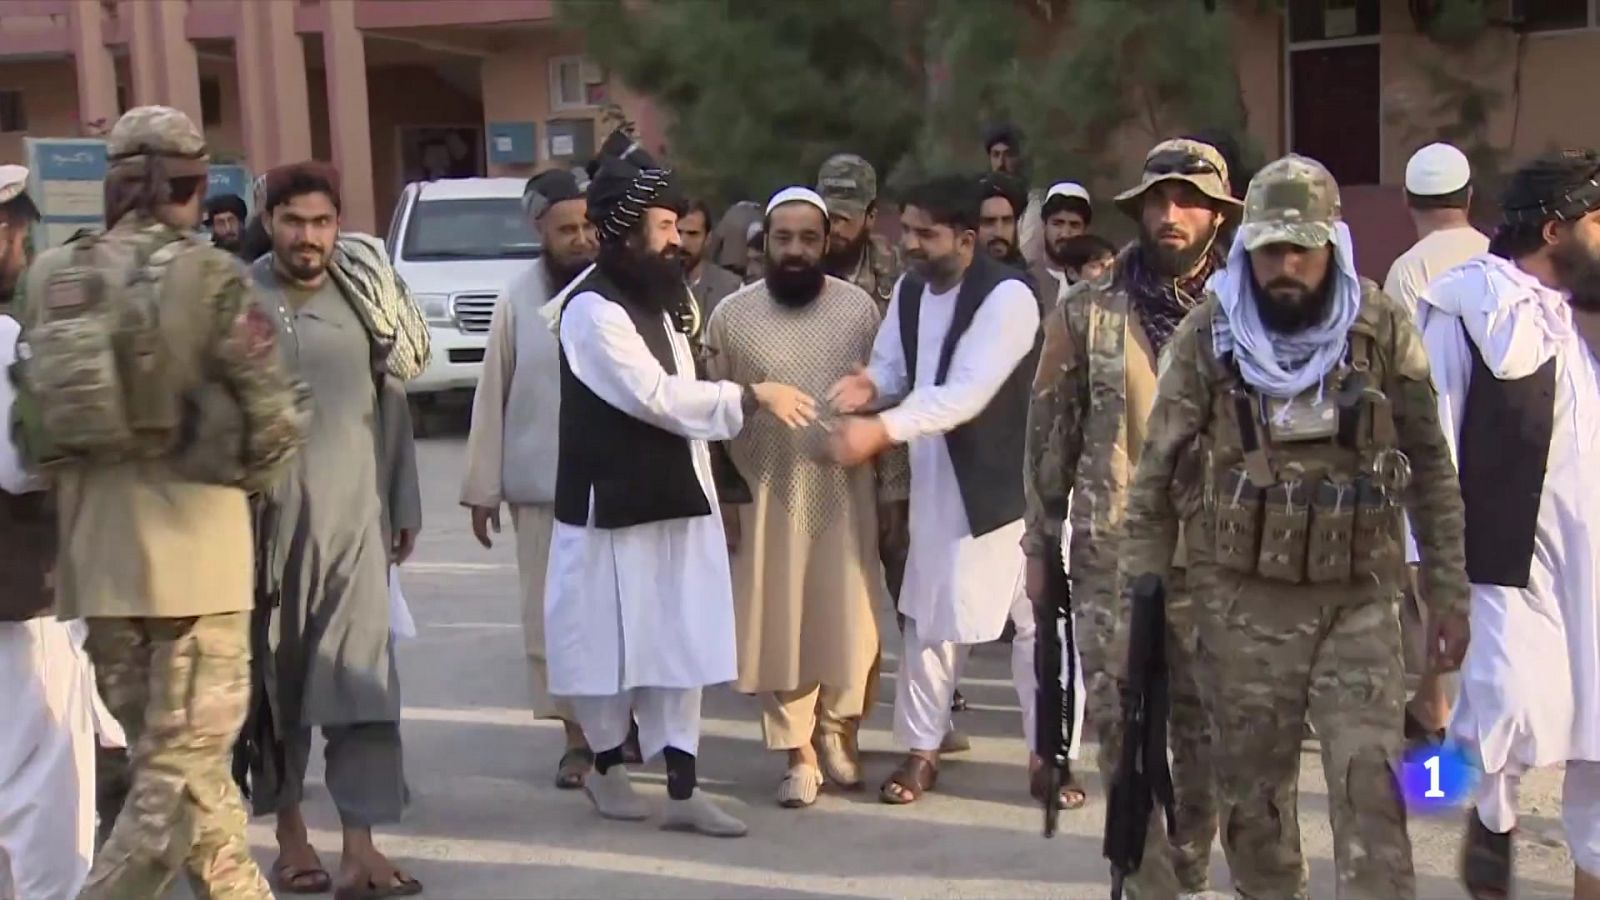 La red Haqqani, una de las facciones más radicales de los talibanes, lidera parte del gobierno afgano